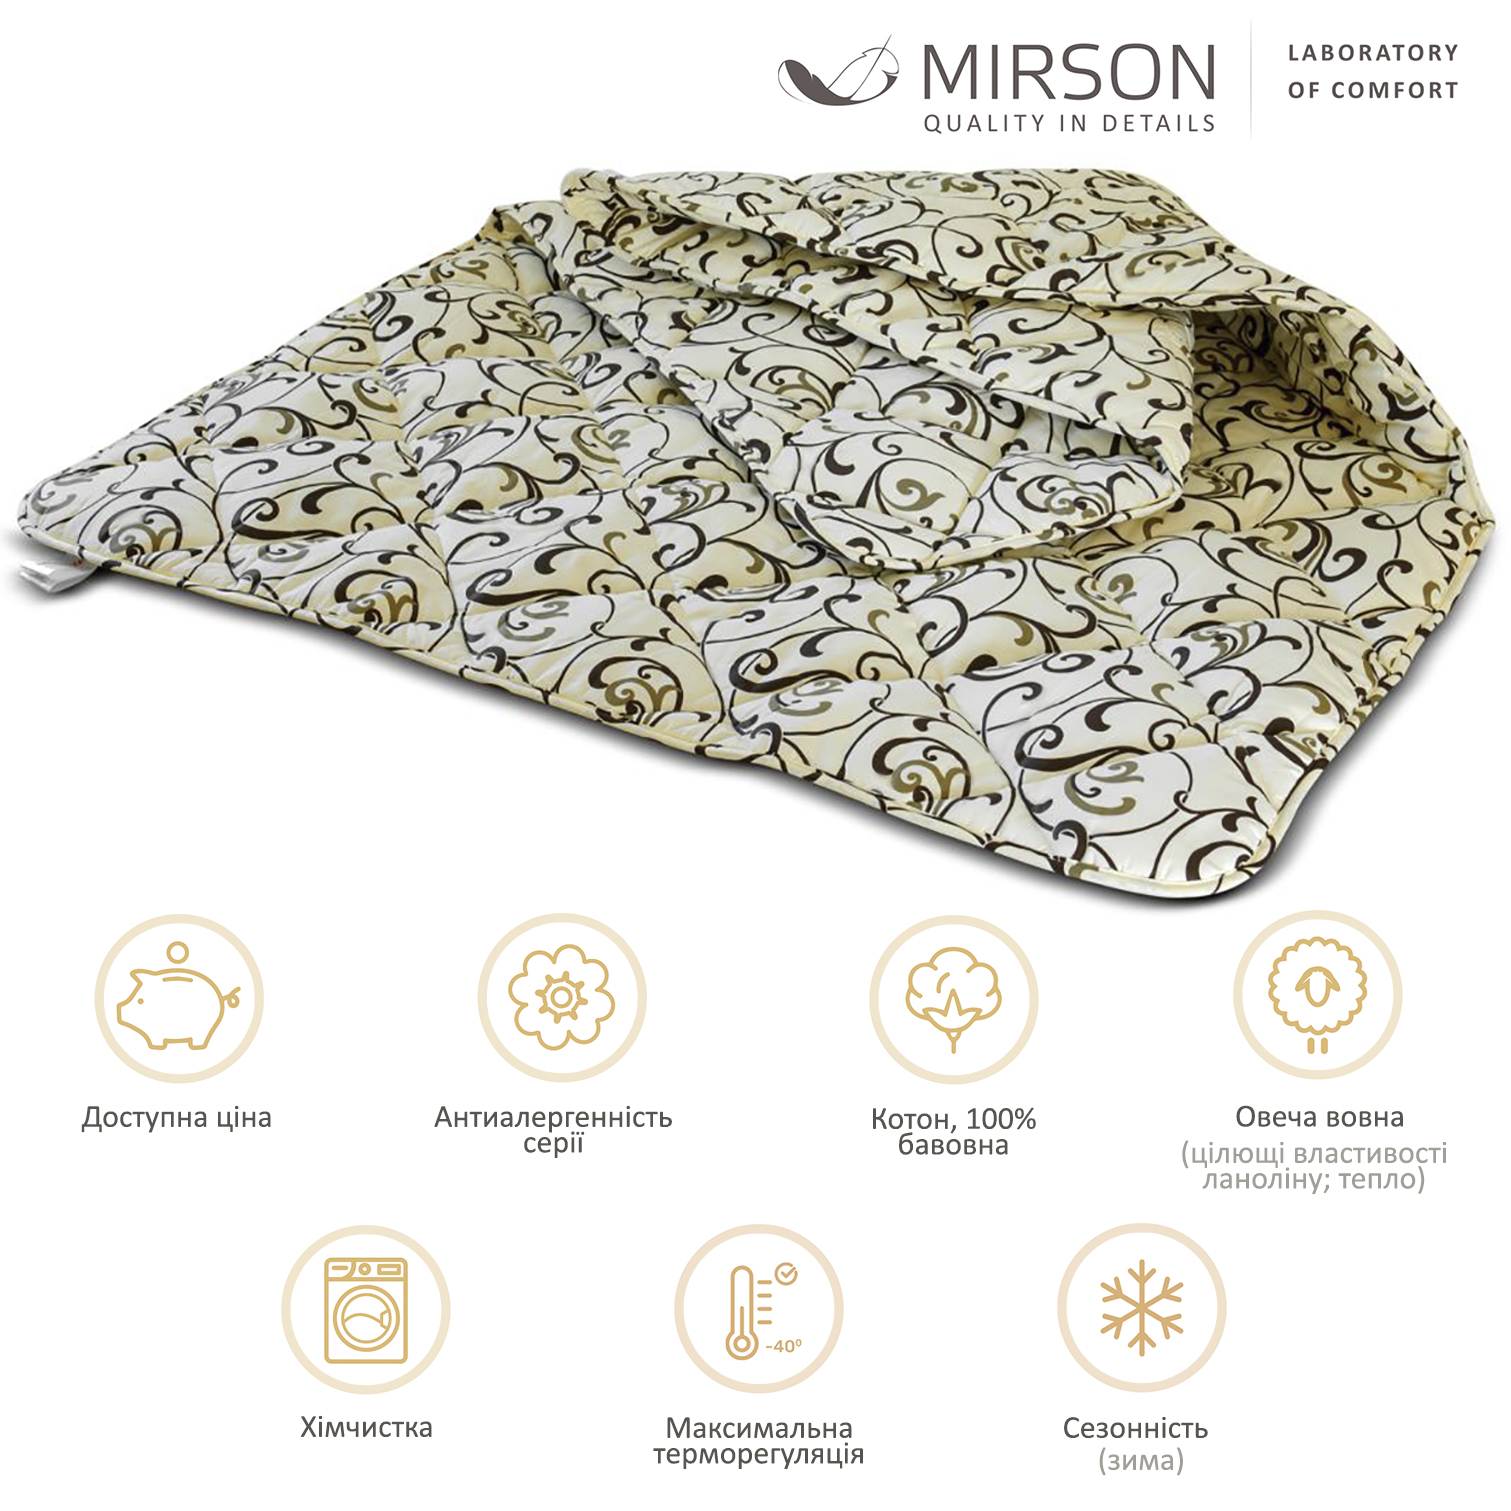 Одеяло шерстяное MirSon №018, зимнее, 220x240 см, бежевое с узором - фото 4